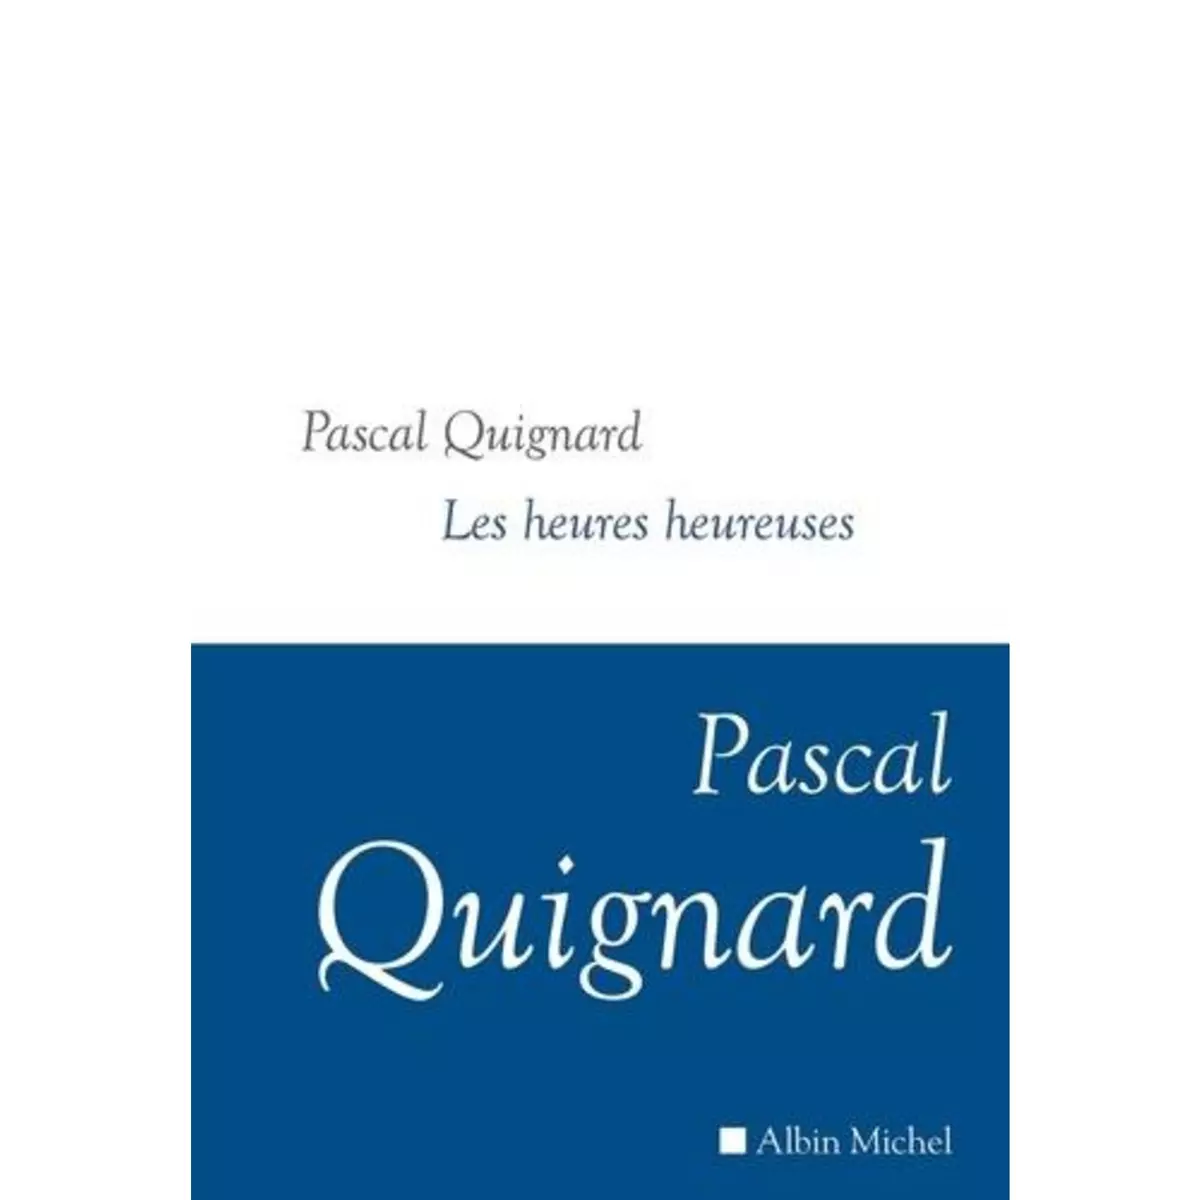  DERNIER ROYAUME TOME 12 : LES HEURES HEUREUSES, Quignard Pascal